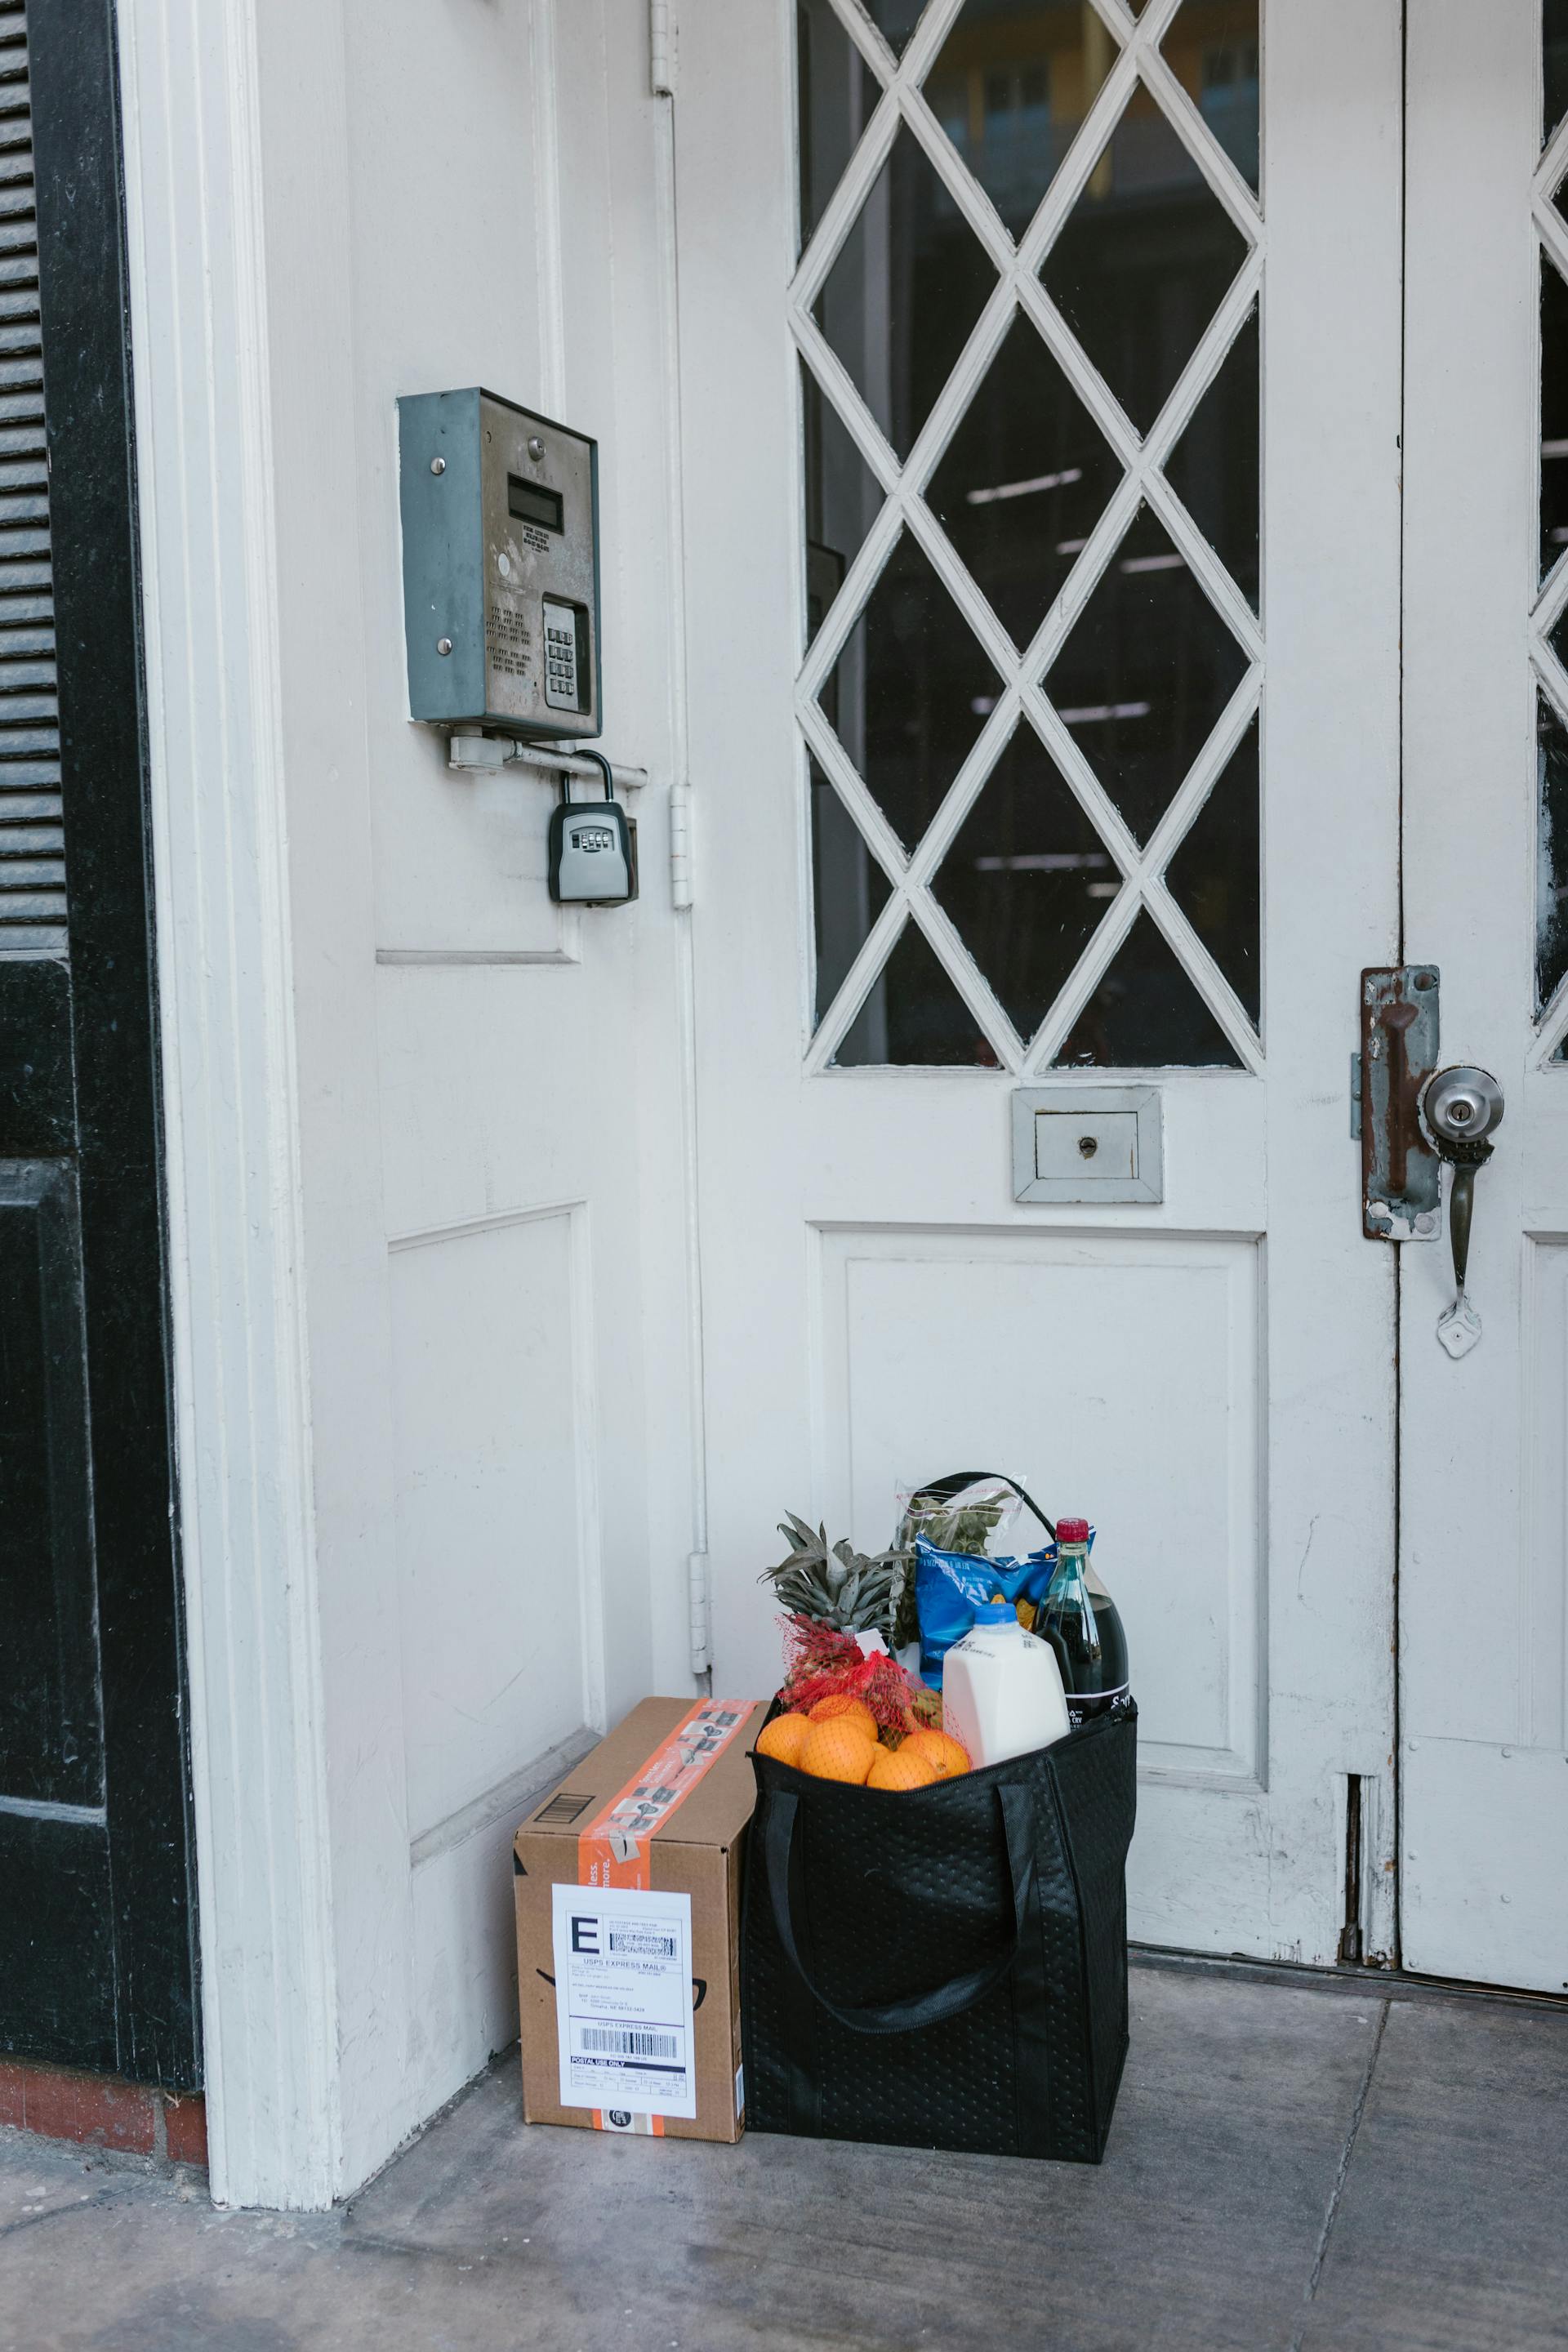 Paquetes de comida en la puerta | Fuente: Pexels